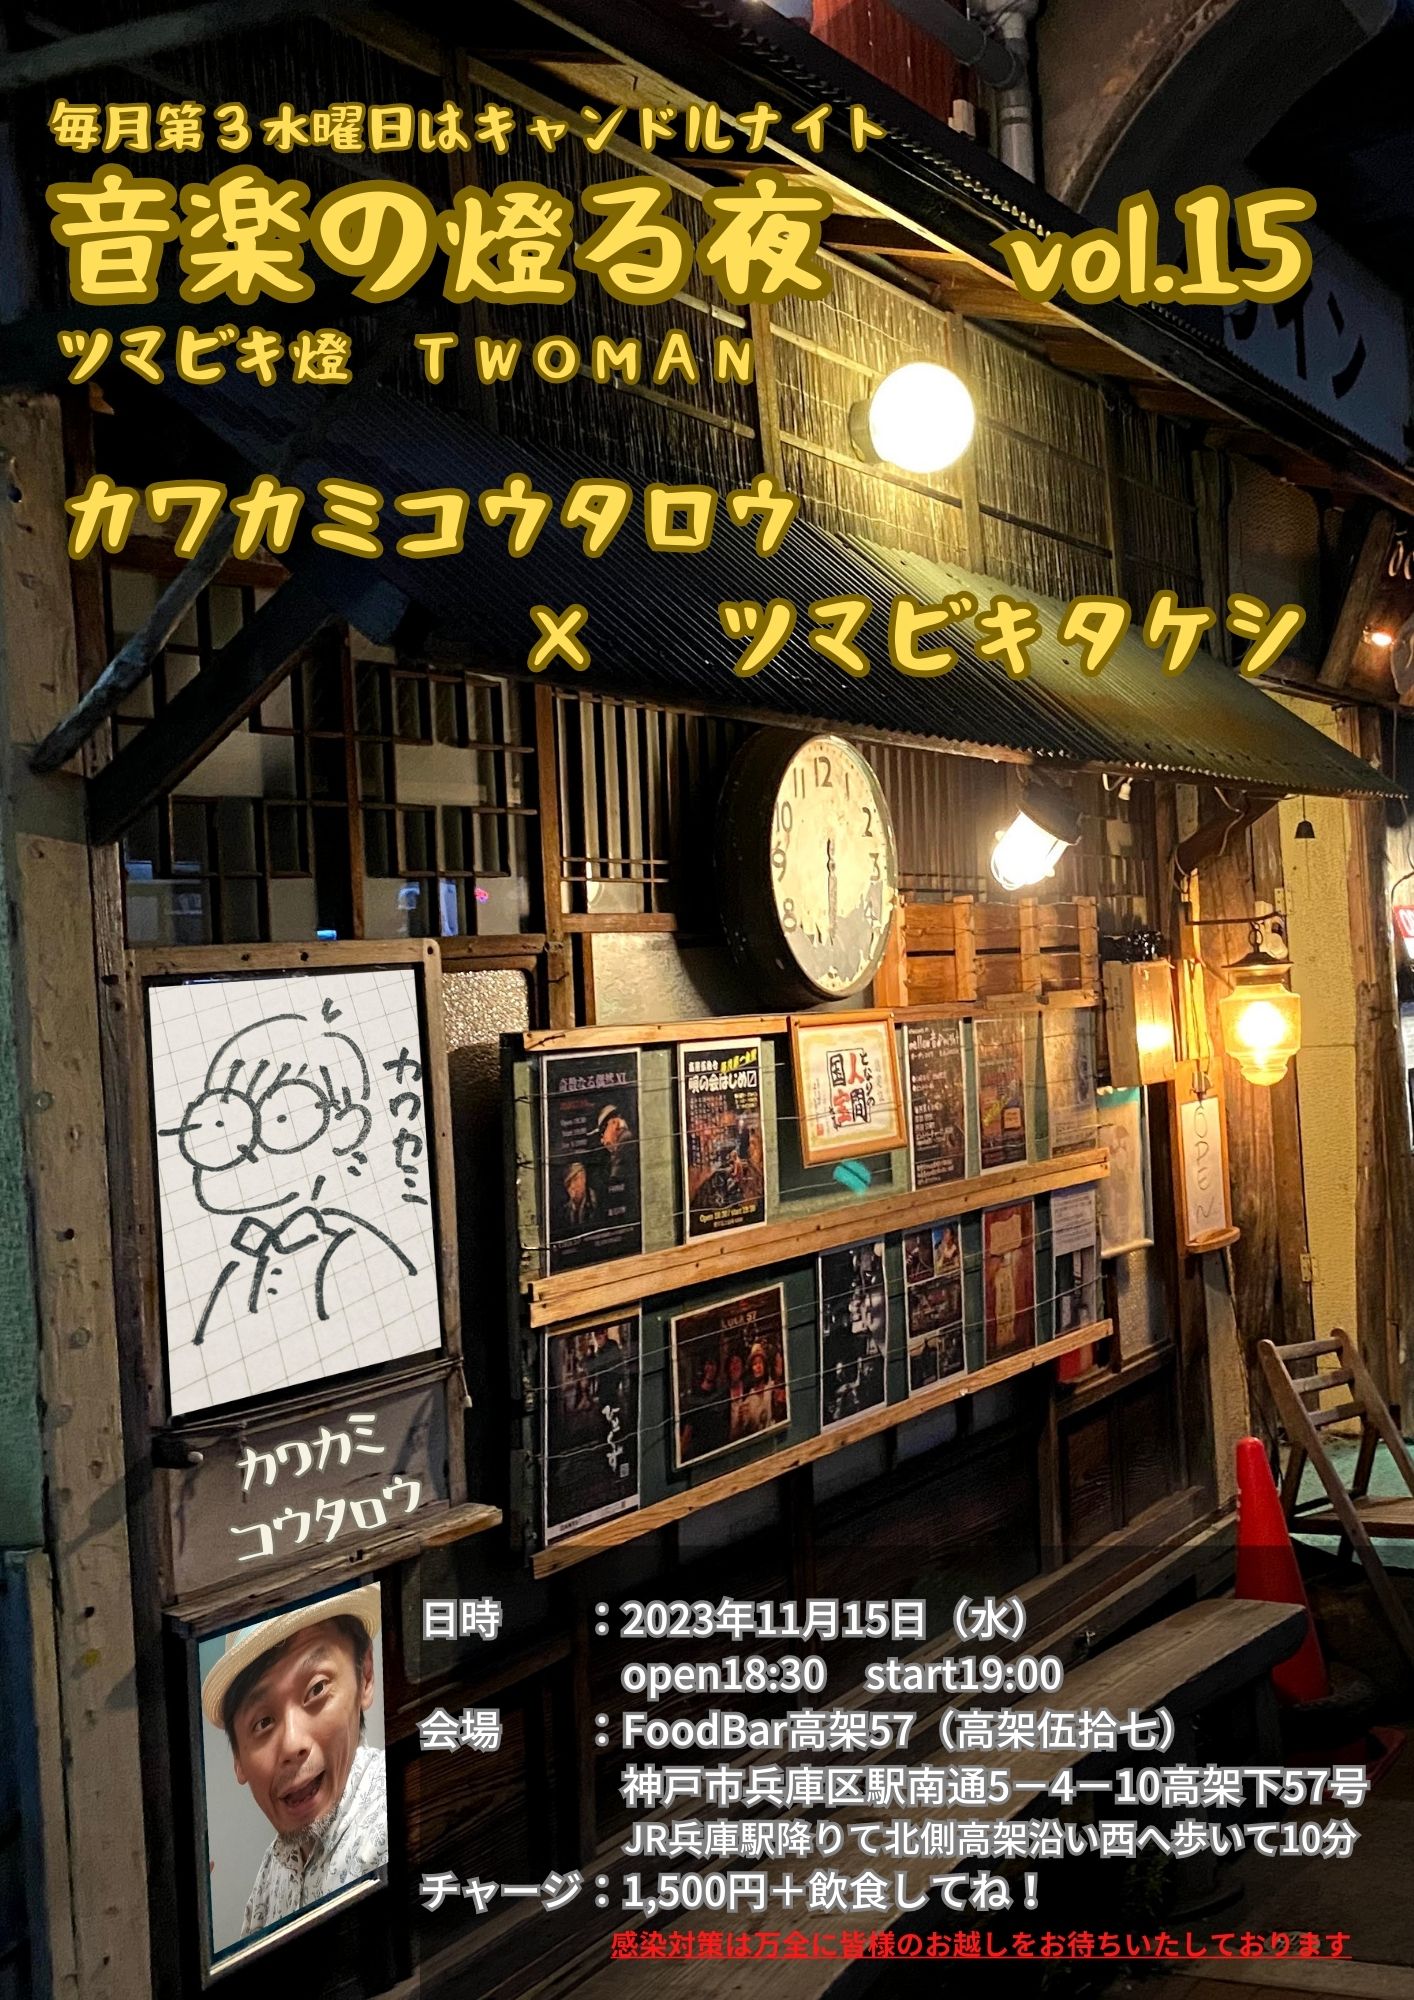 ツマビキタケシ企画『音楽の燈る夜』guestカワカミコウタロー 18時30分オープン